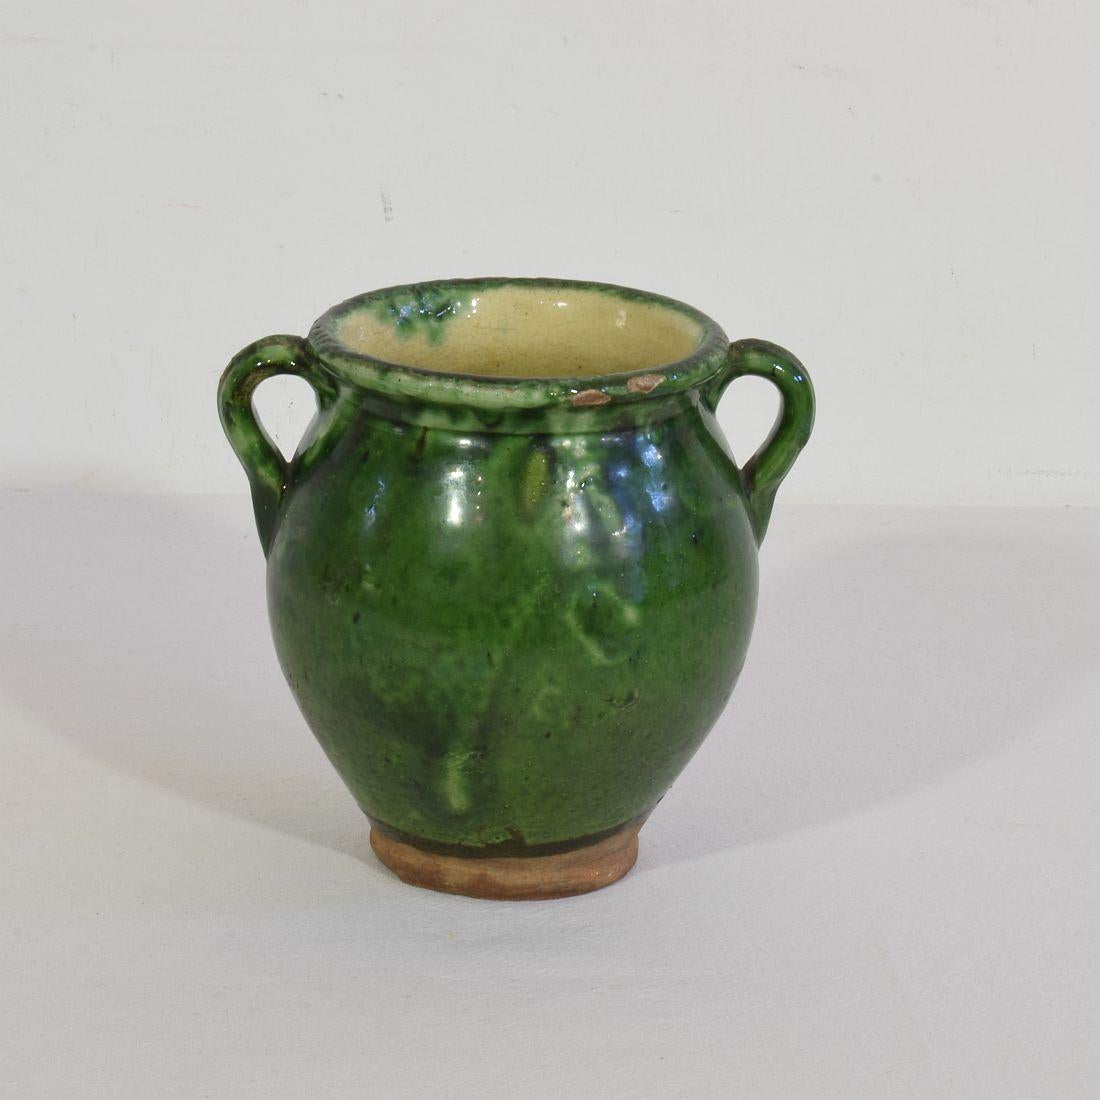 Vernissé Petite jarre française du 19e siècle en céramique à glaçure verte